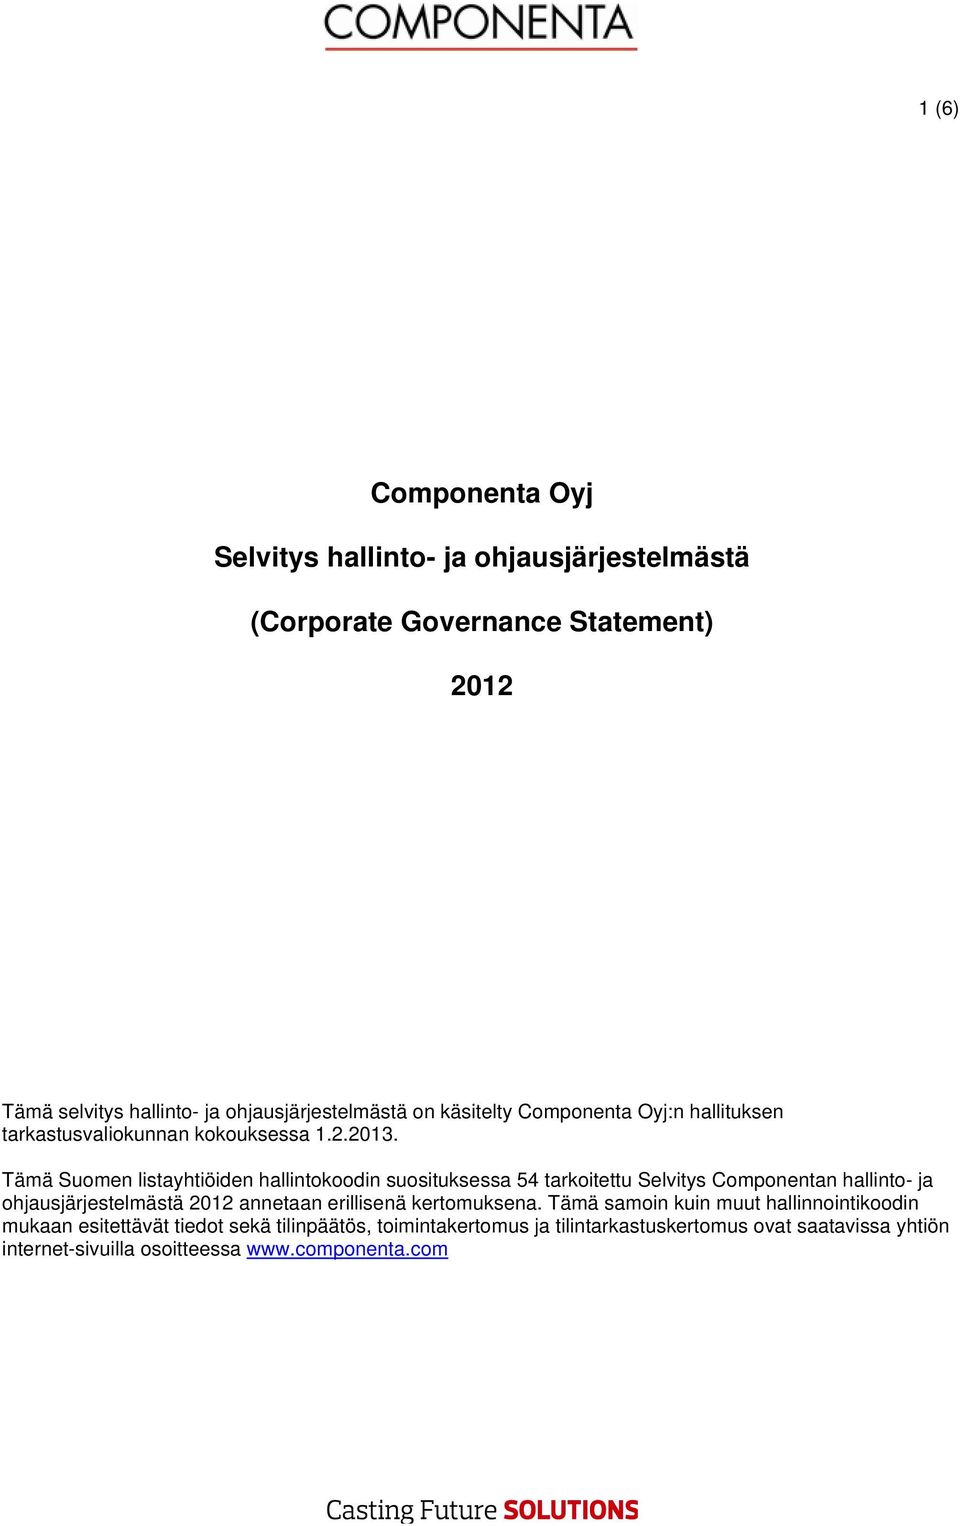 Tämä Suomen listayhtiöiden hallintokoodin suosituksessa 54 tarkoitettu Selvitys Componentan hallinto- ja ohjausjärjestelmästä 2012 annetaan